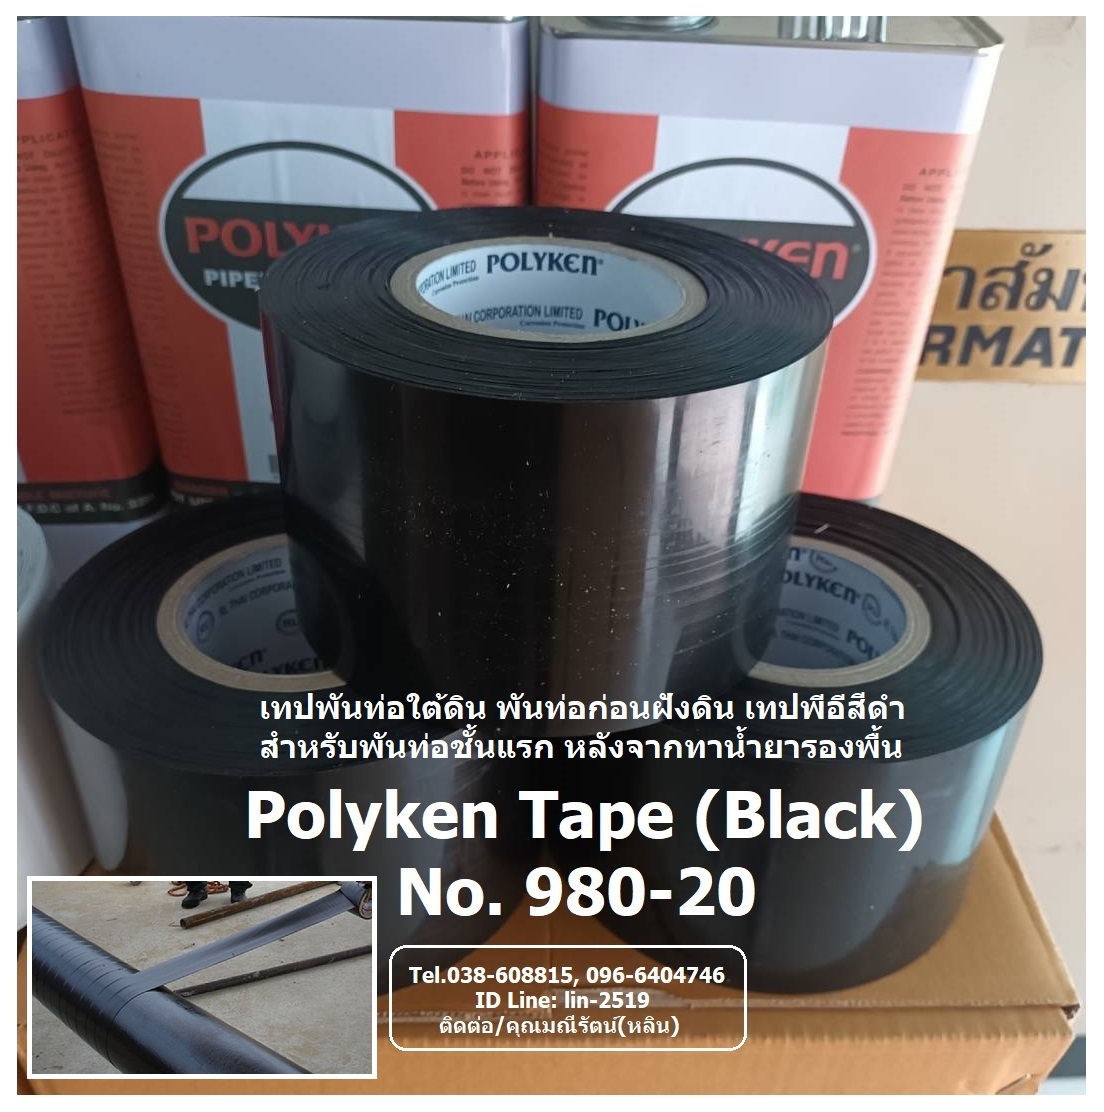 รูปภาพ Polyken Wrapping Tape No.980-20 (Black) เทปพันท่อใต้ดินสีดำ เป็นเทปพันชั้นแรกหลังจากทาน้ำยารองพื้น Polyken Primer No.1027